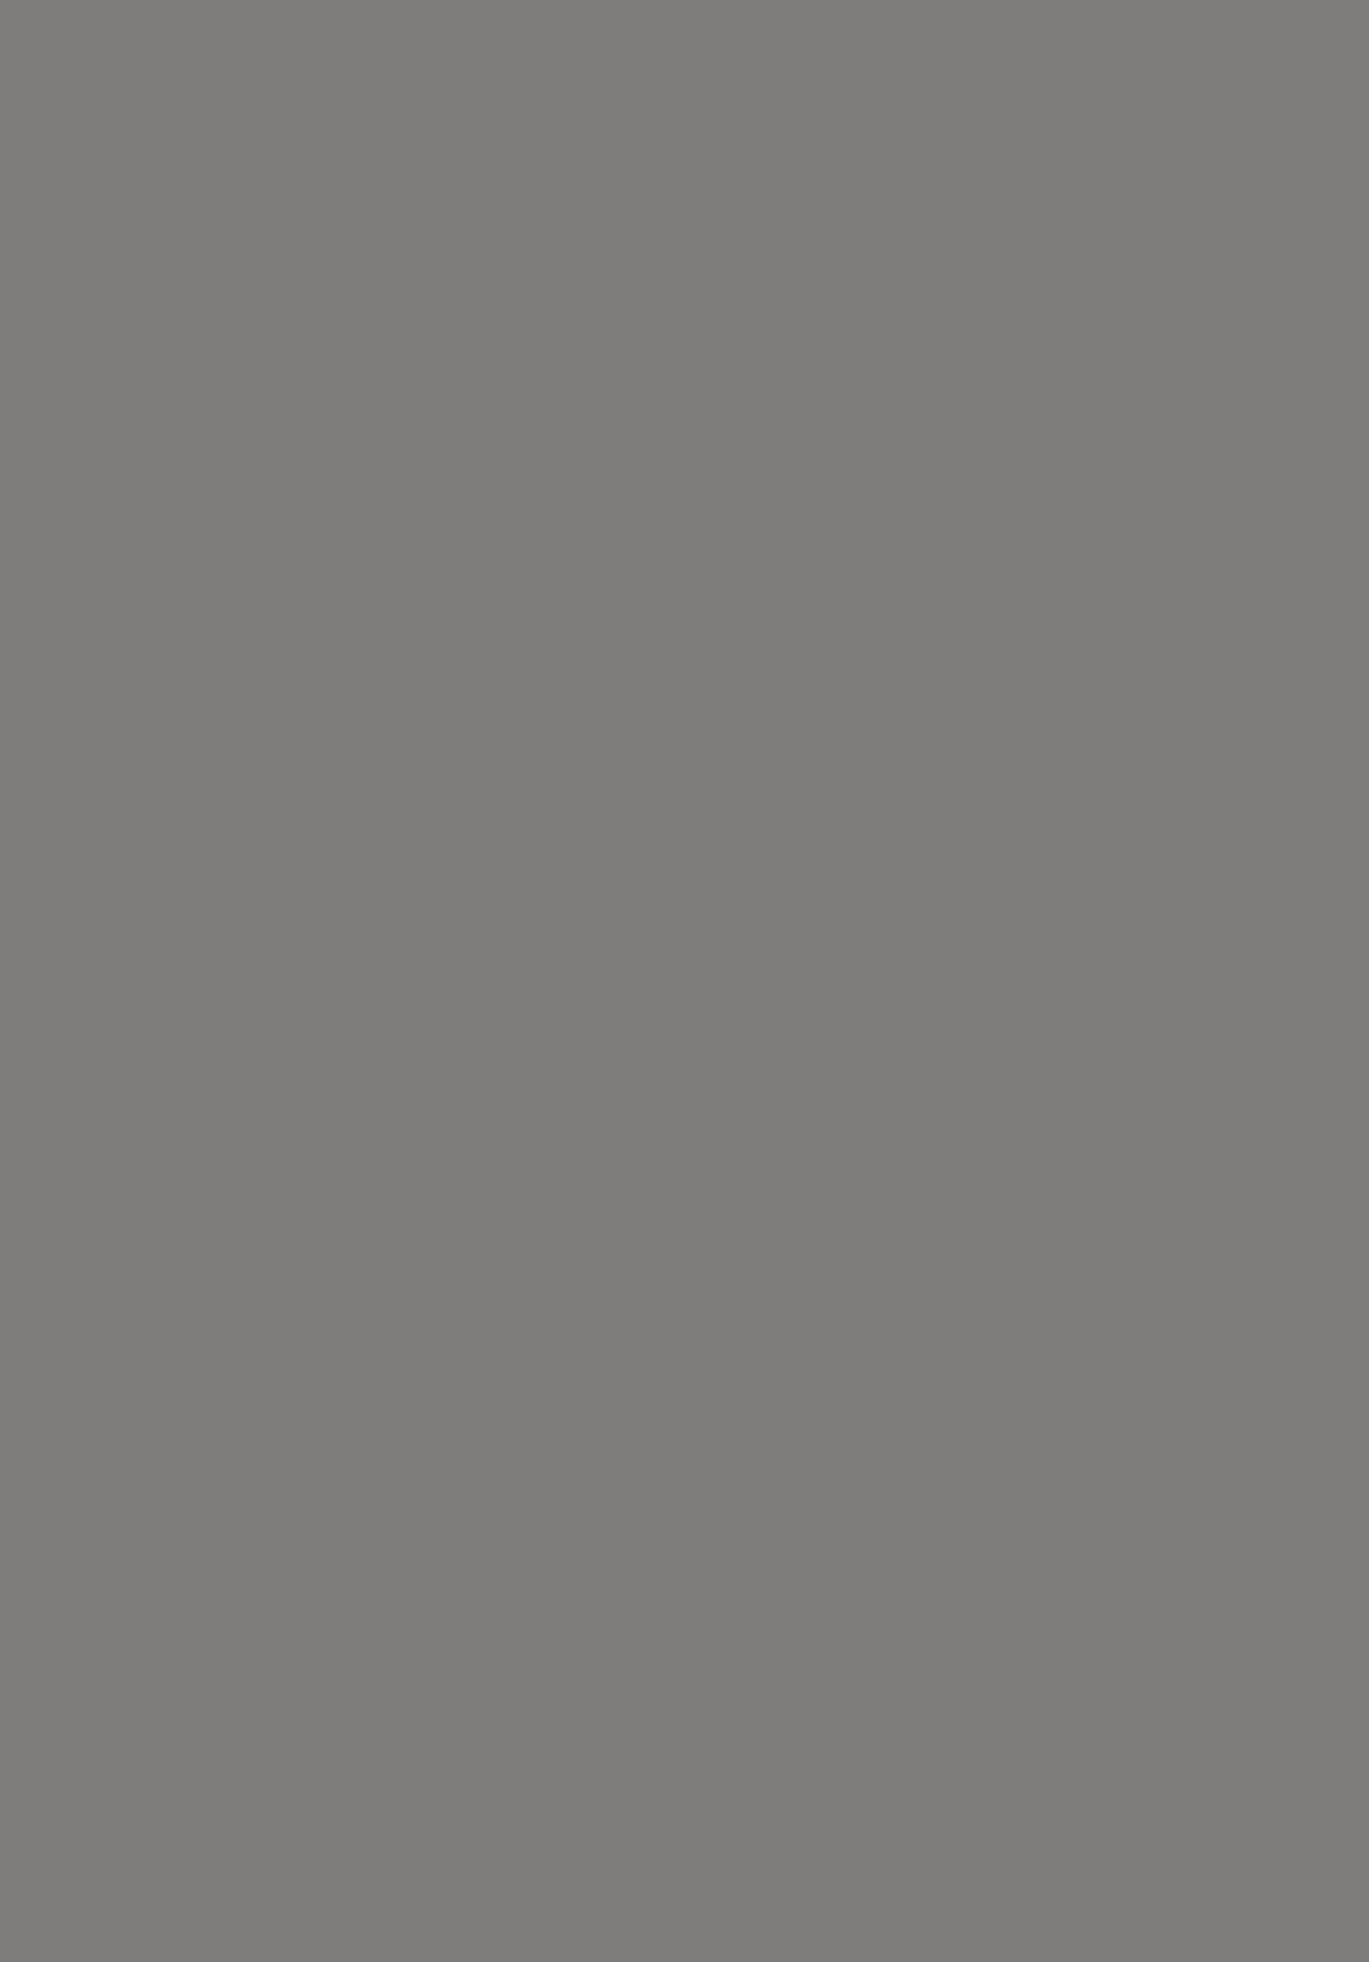 Навершие. Тагарская культура. VIII-VI вв. до н. э. Бронза. Южная Сибирь, Красноярский край, Хакасско-Минусинская котловина. Фотография: Государственный Эрмитаж